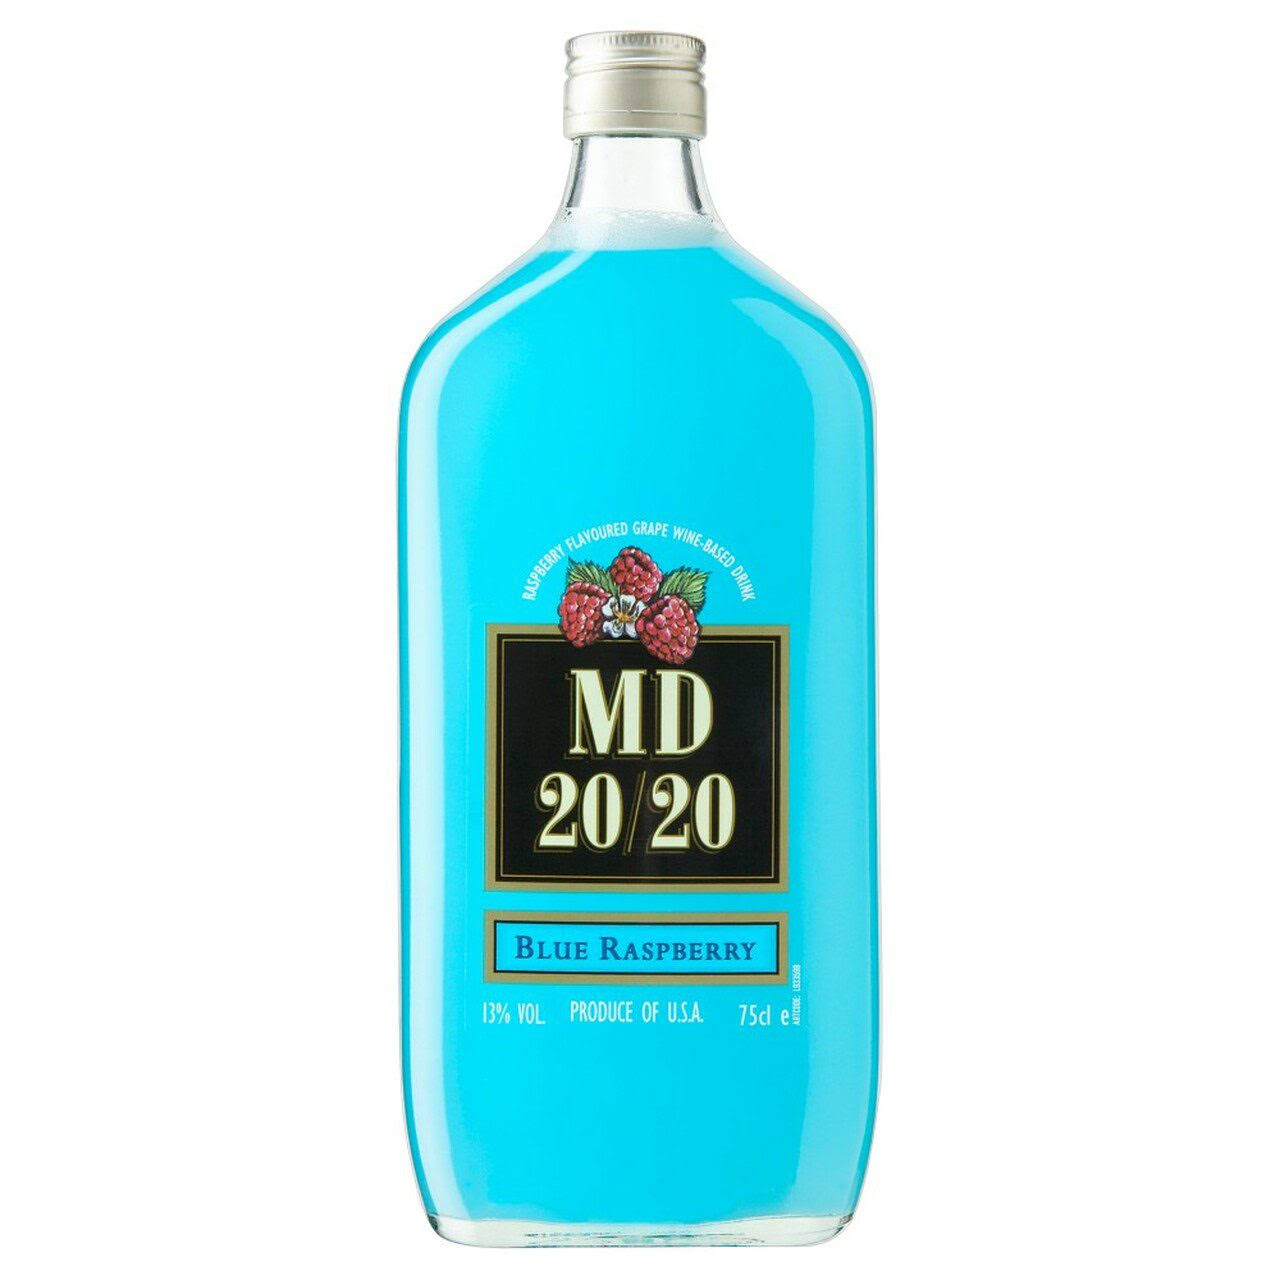 MD 20/20 Blue Raspberry Flavored Wine - 750ml